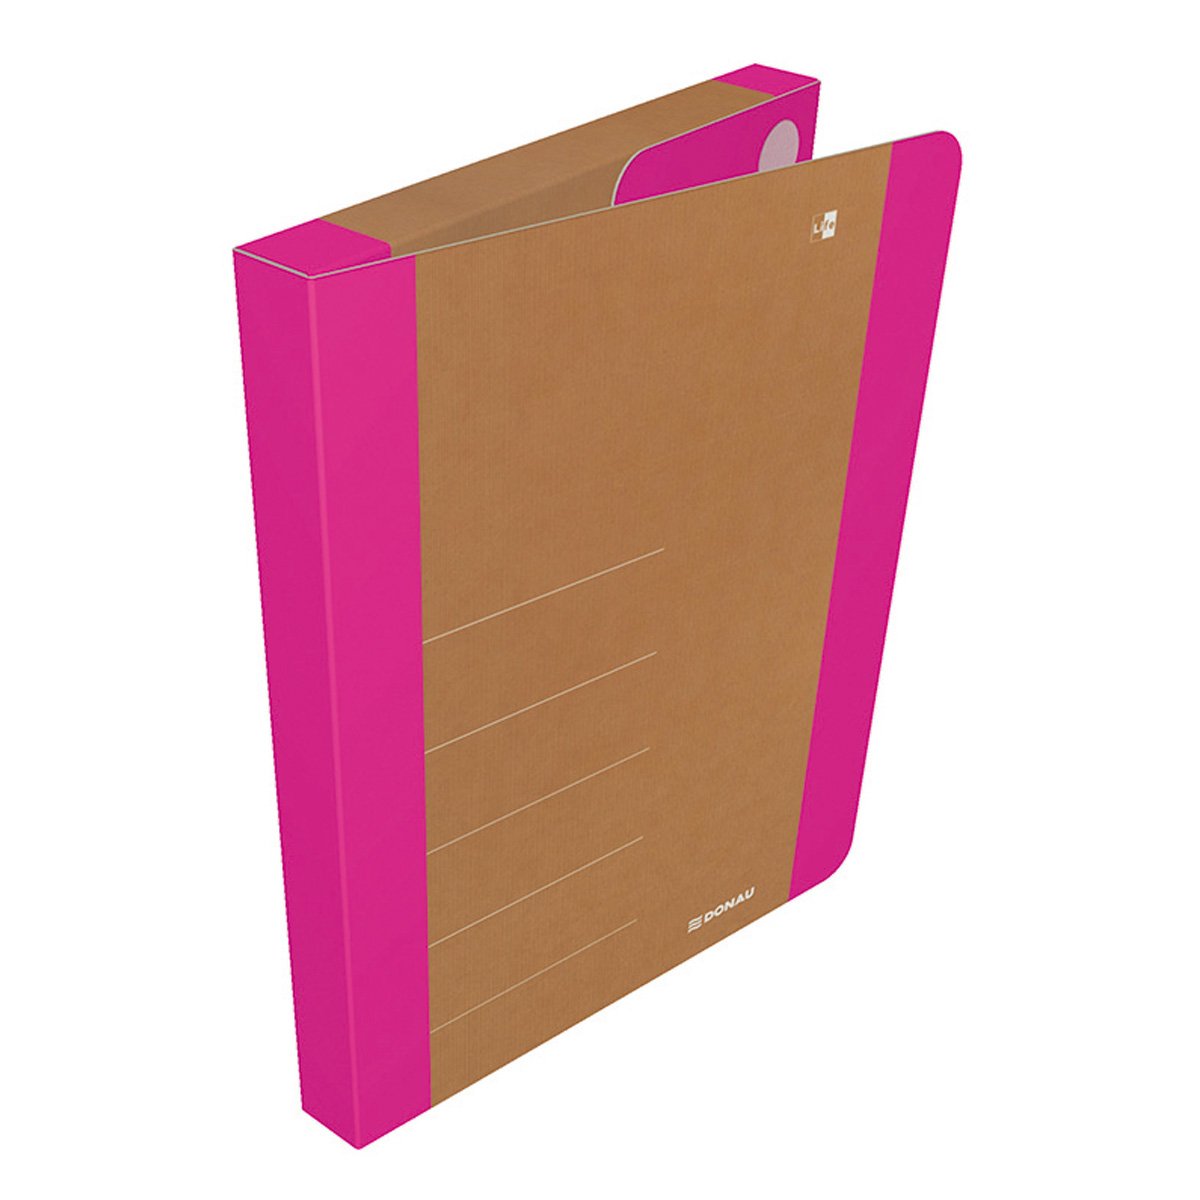 DONAU Box na spisy DONAU LIFE, A4, karton, neonově růžový